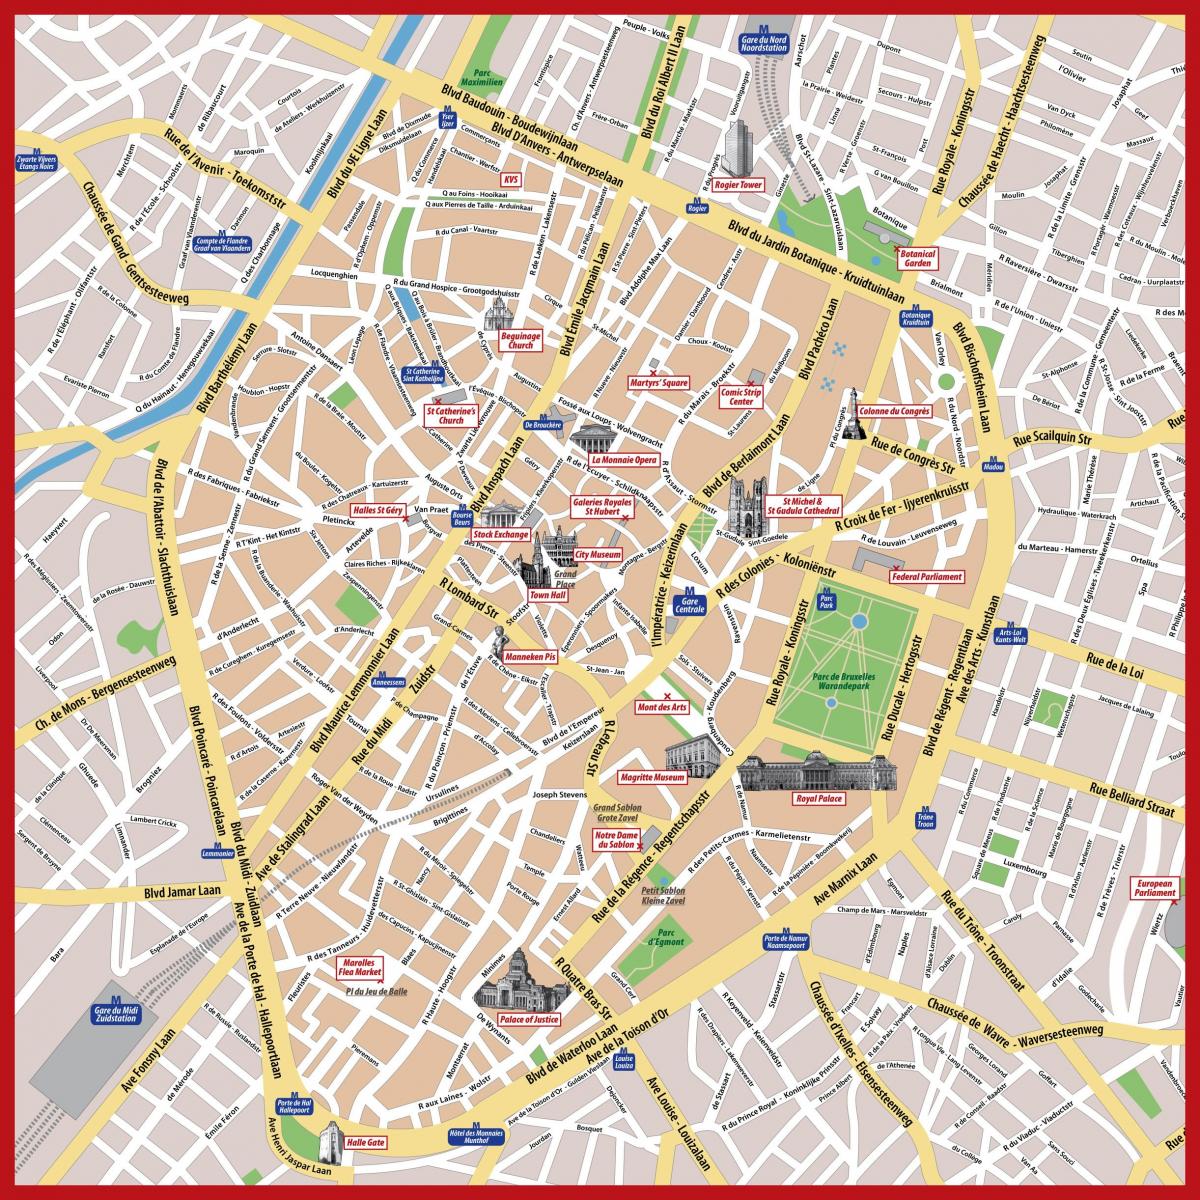 Plan de la ville de bruxelles pdf